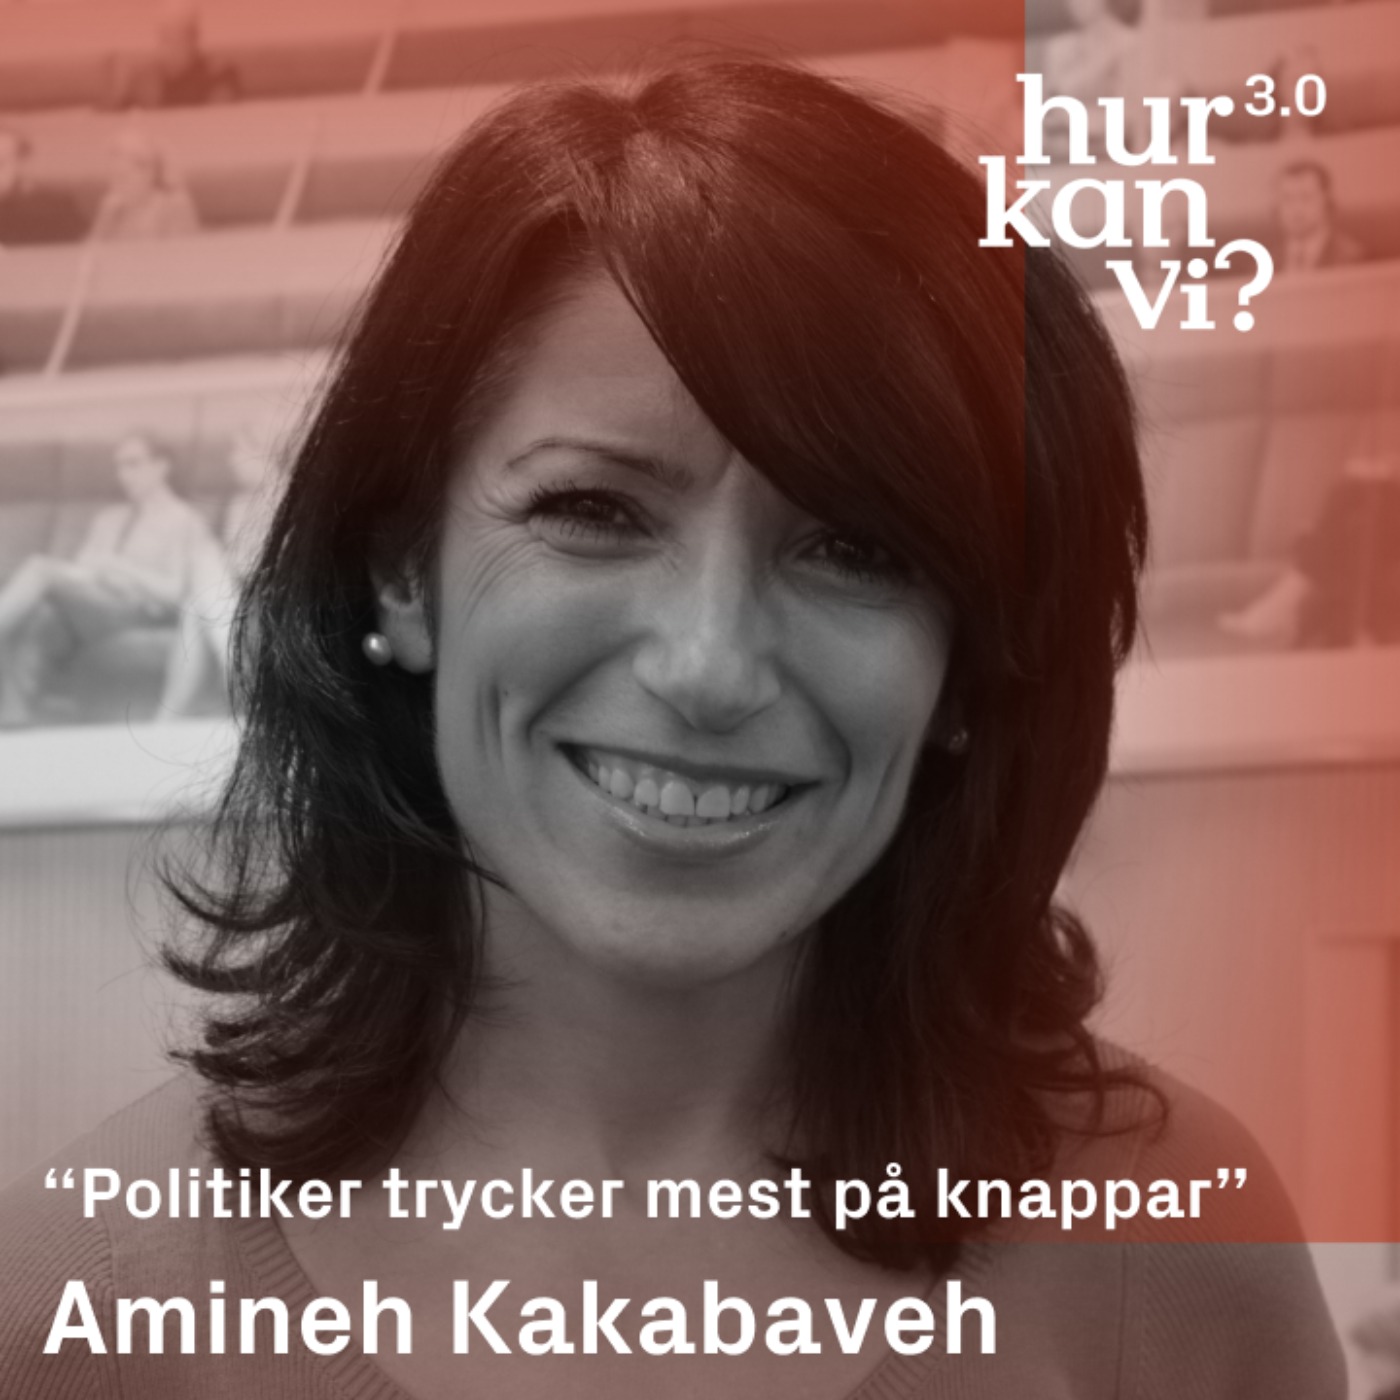 Amineh Kakabaveh  - “Politiker trycker mest på knappar”